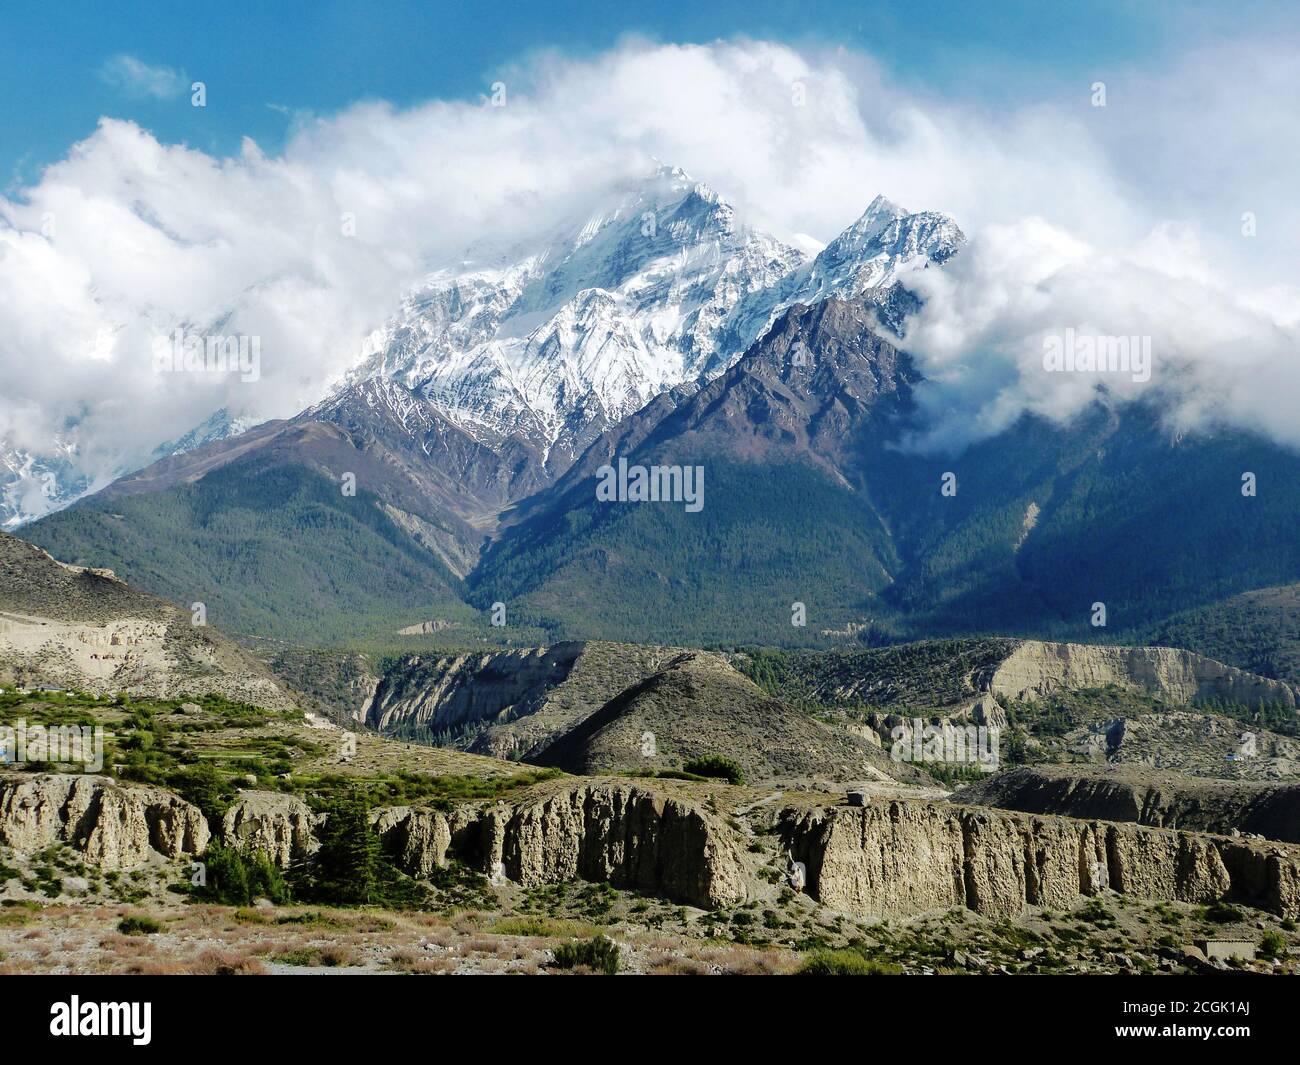 Magnifique paysage de montagnes de l'Himalaya dans le district de Mustang Népal. Banque D'Images